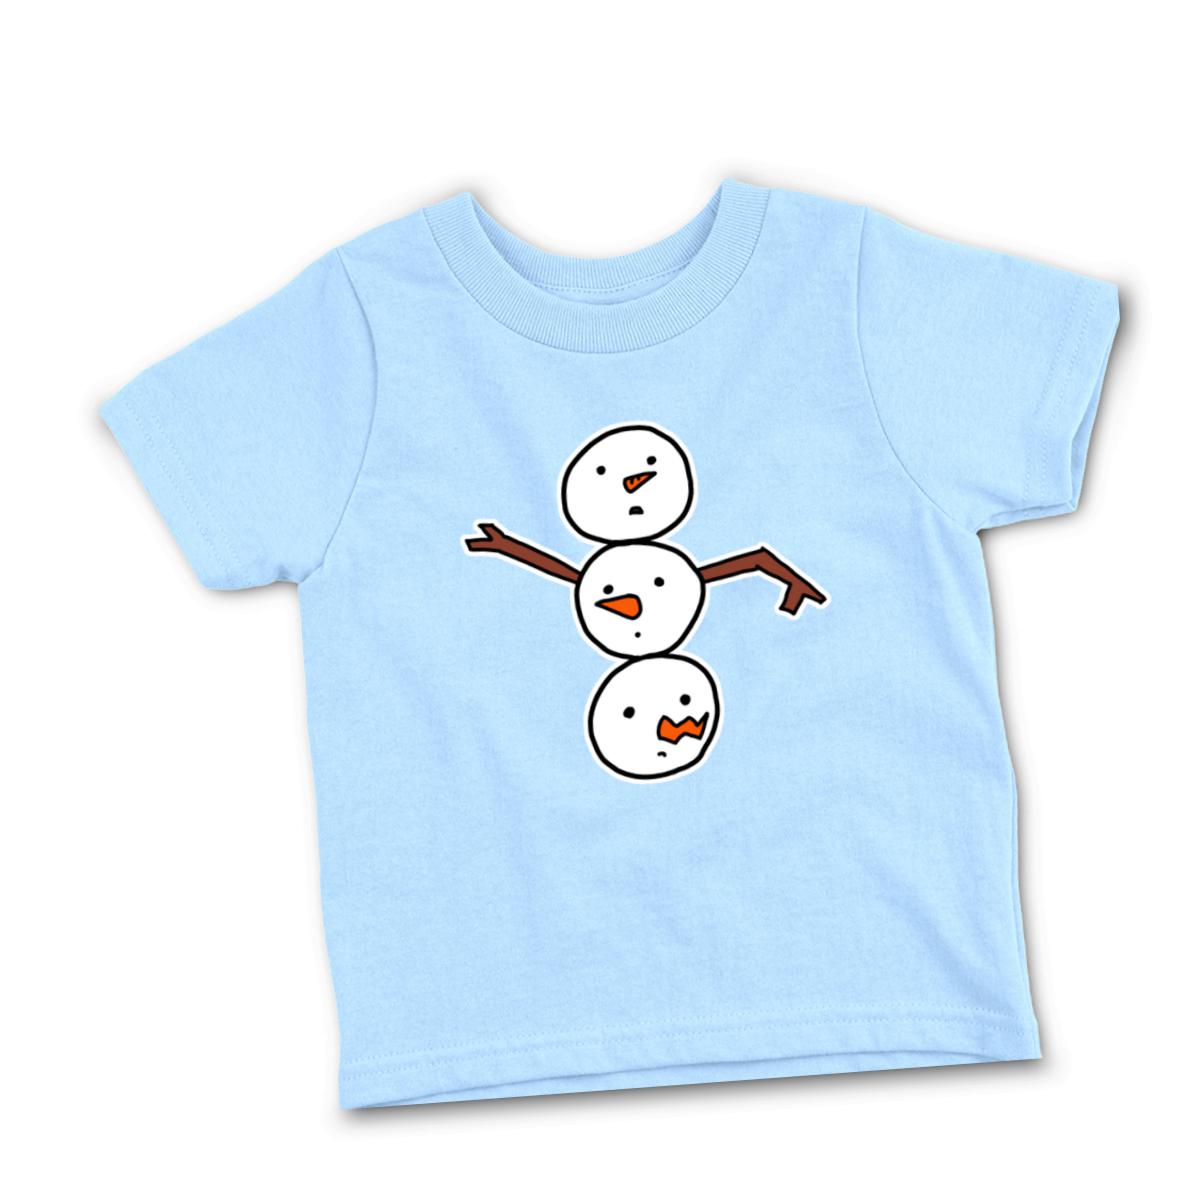 Snowman All Heads Infant Tee 24M light-blue